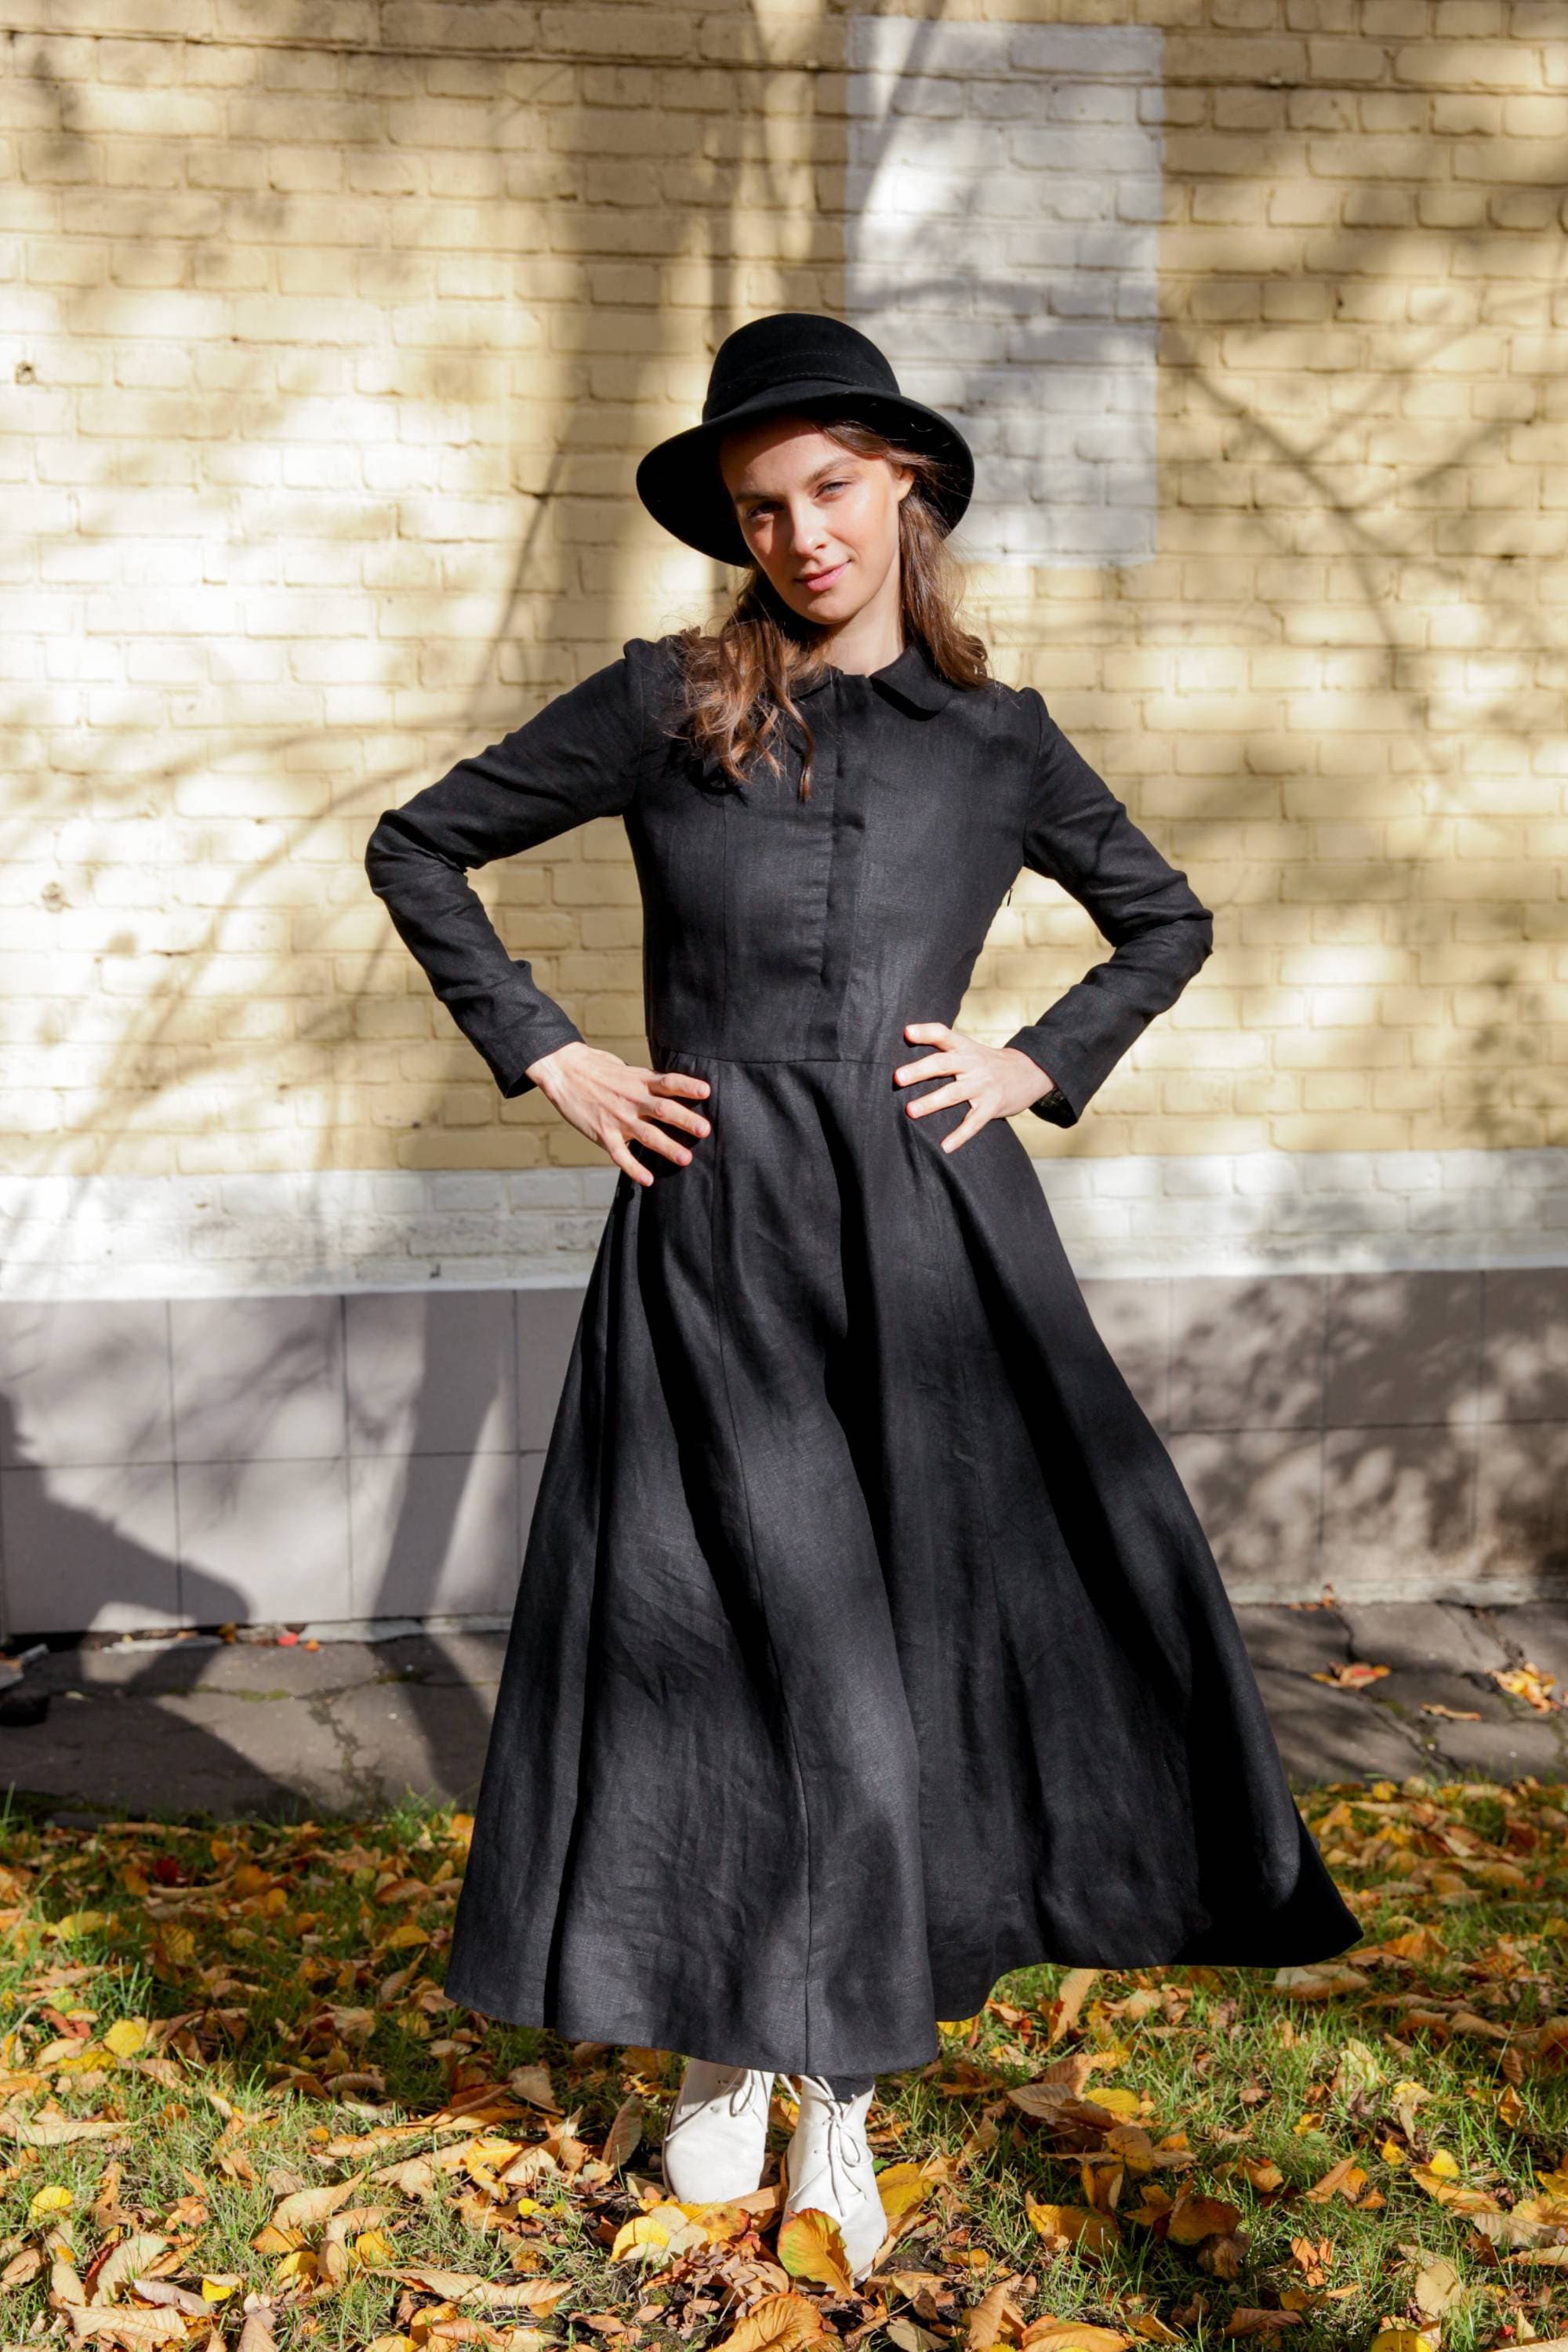 Anzeige Beschleunigen Sie Manuskript Kleidung Amish Beschreiben Megalopolis Diebstahl